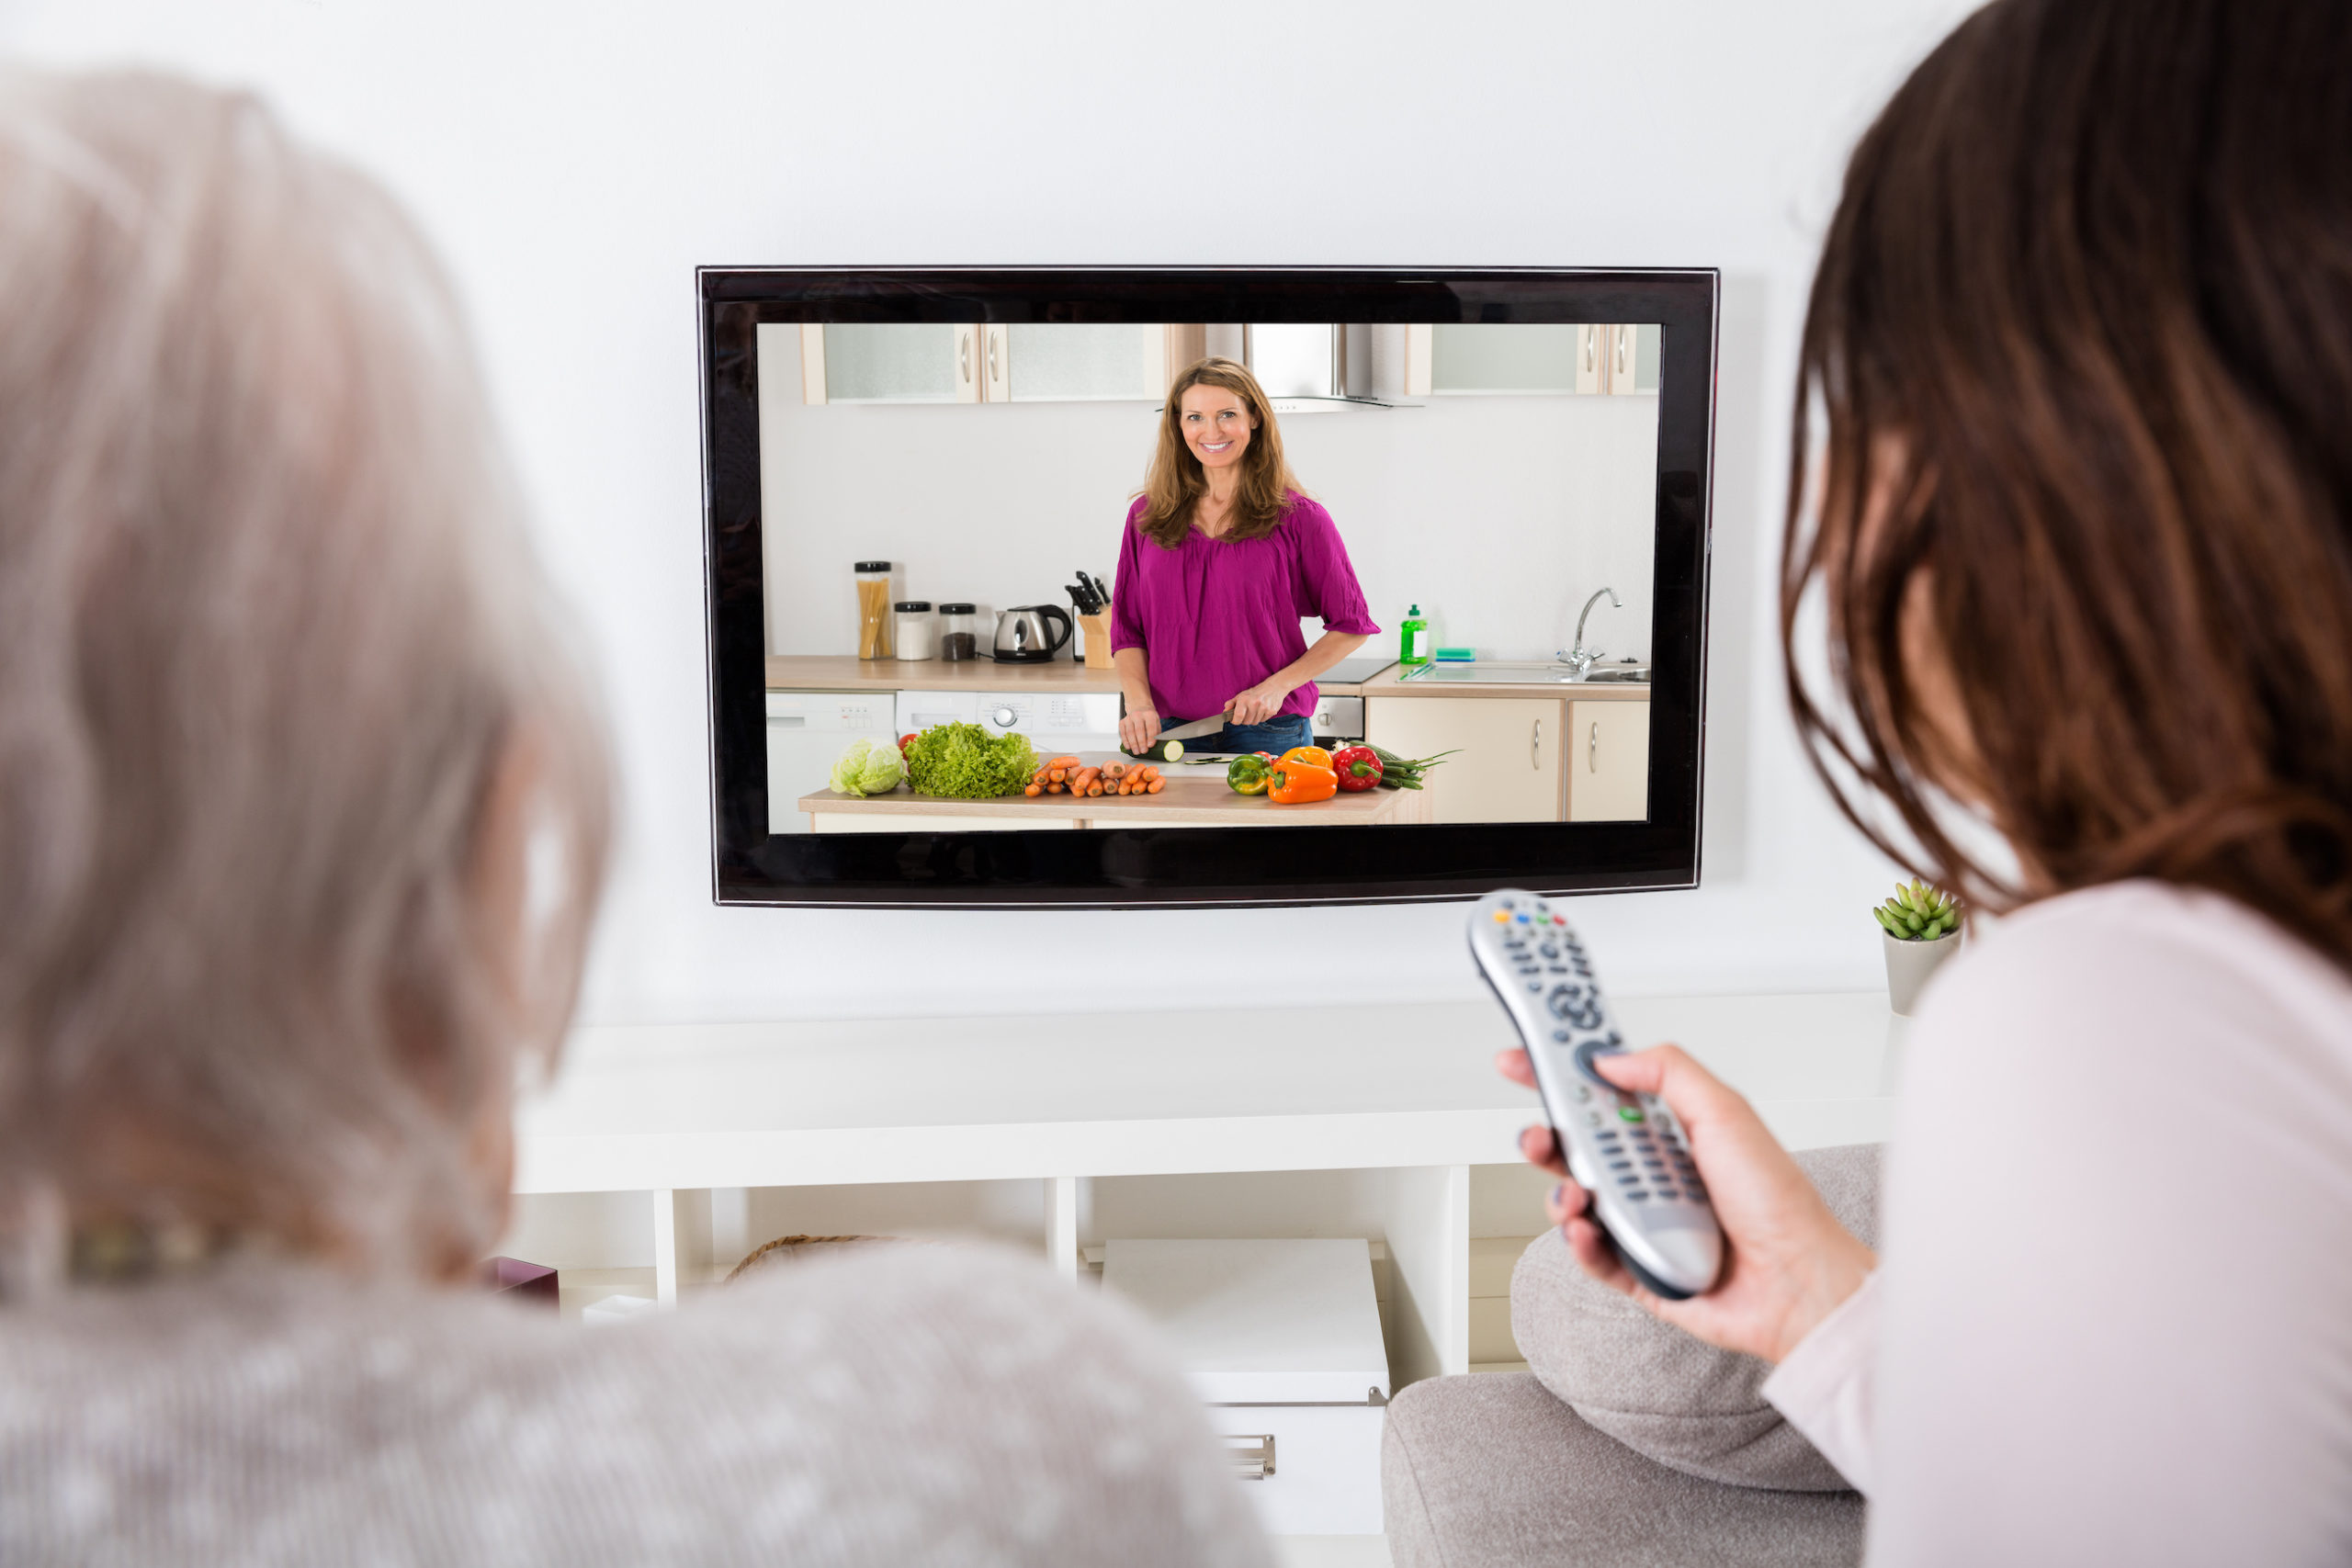 Тв вумен и коричневый камера. Телевизор с кулинарией. Wanasah TV. Женщина смотрит телевизор на затопленной кухне.